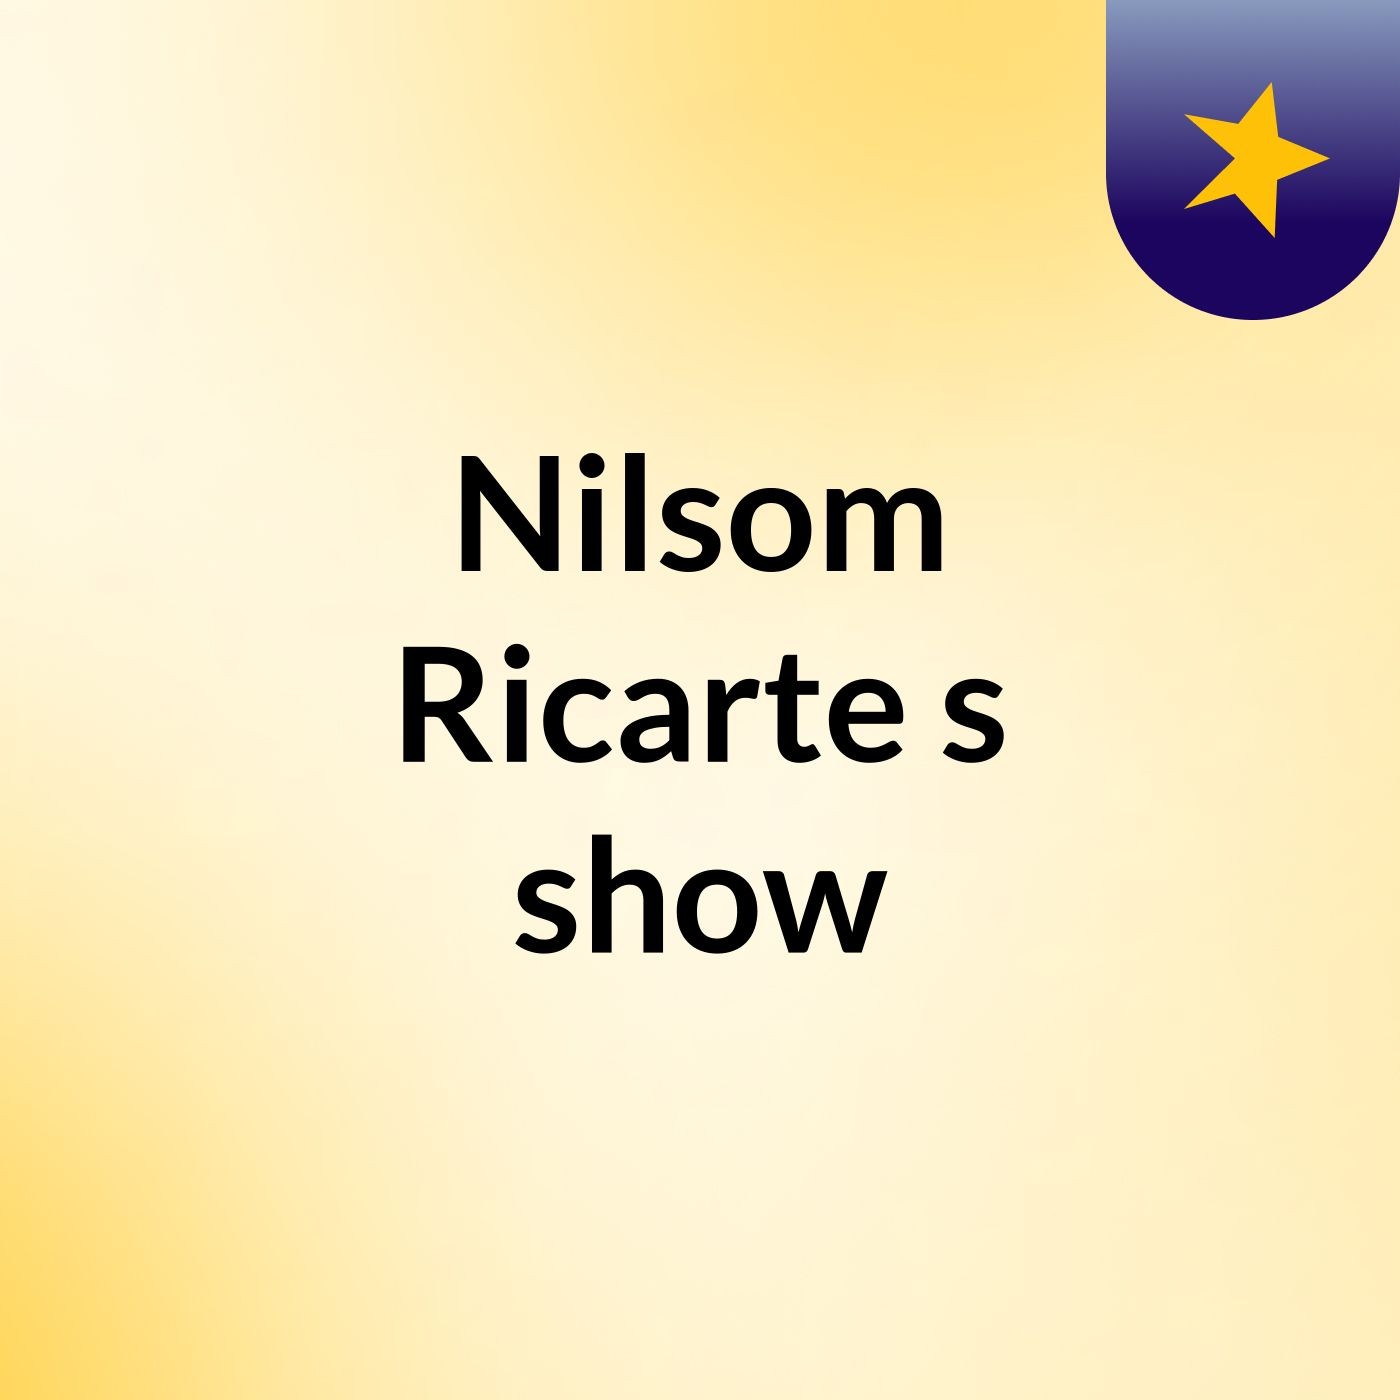 Nilsom Ricarte's show